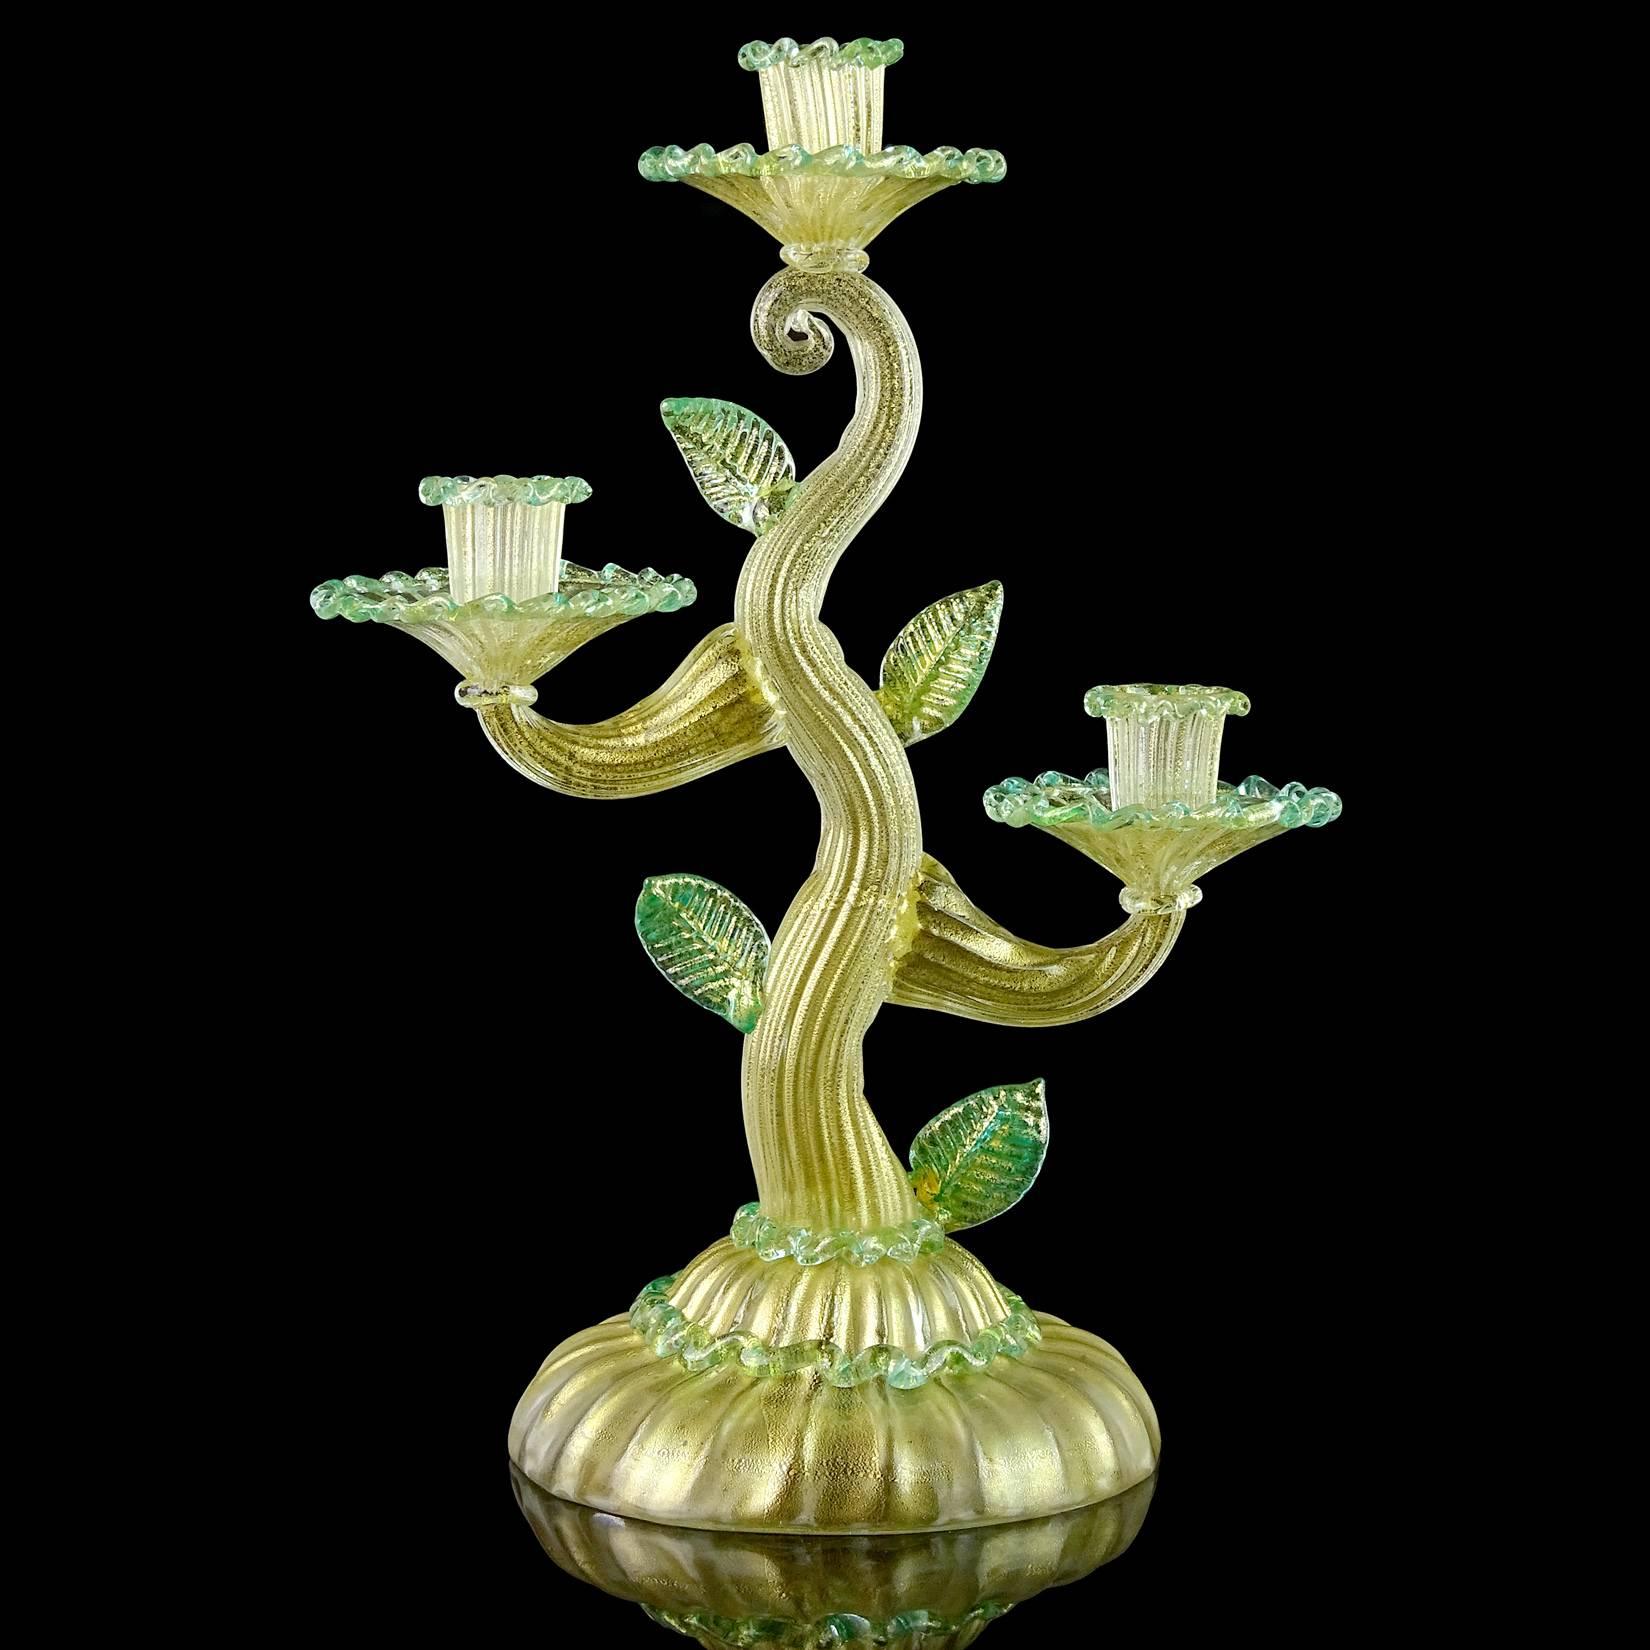 Superbe, et rare, grand candélabre antique en verre d'art italien soufflé à la main de Murano, mouchetures dorées avec accents verts, en forme d'arbre. Documenté au designer Ercole Barovier pour la société Barovier e Toso. Il est orné de feuilles